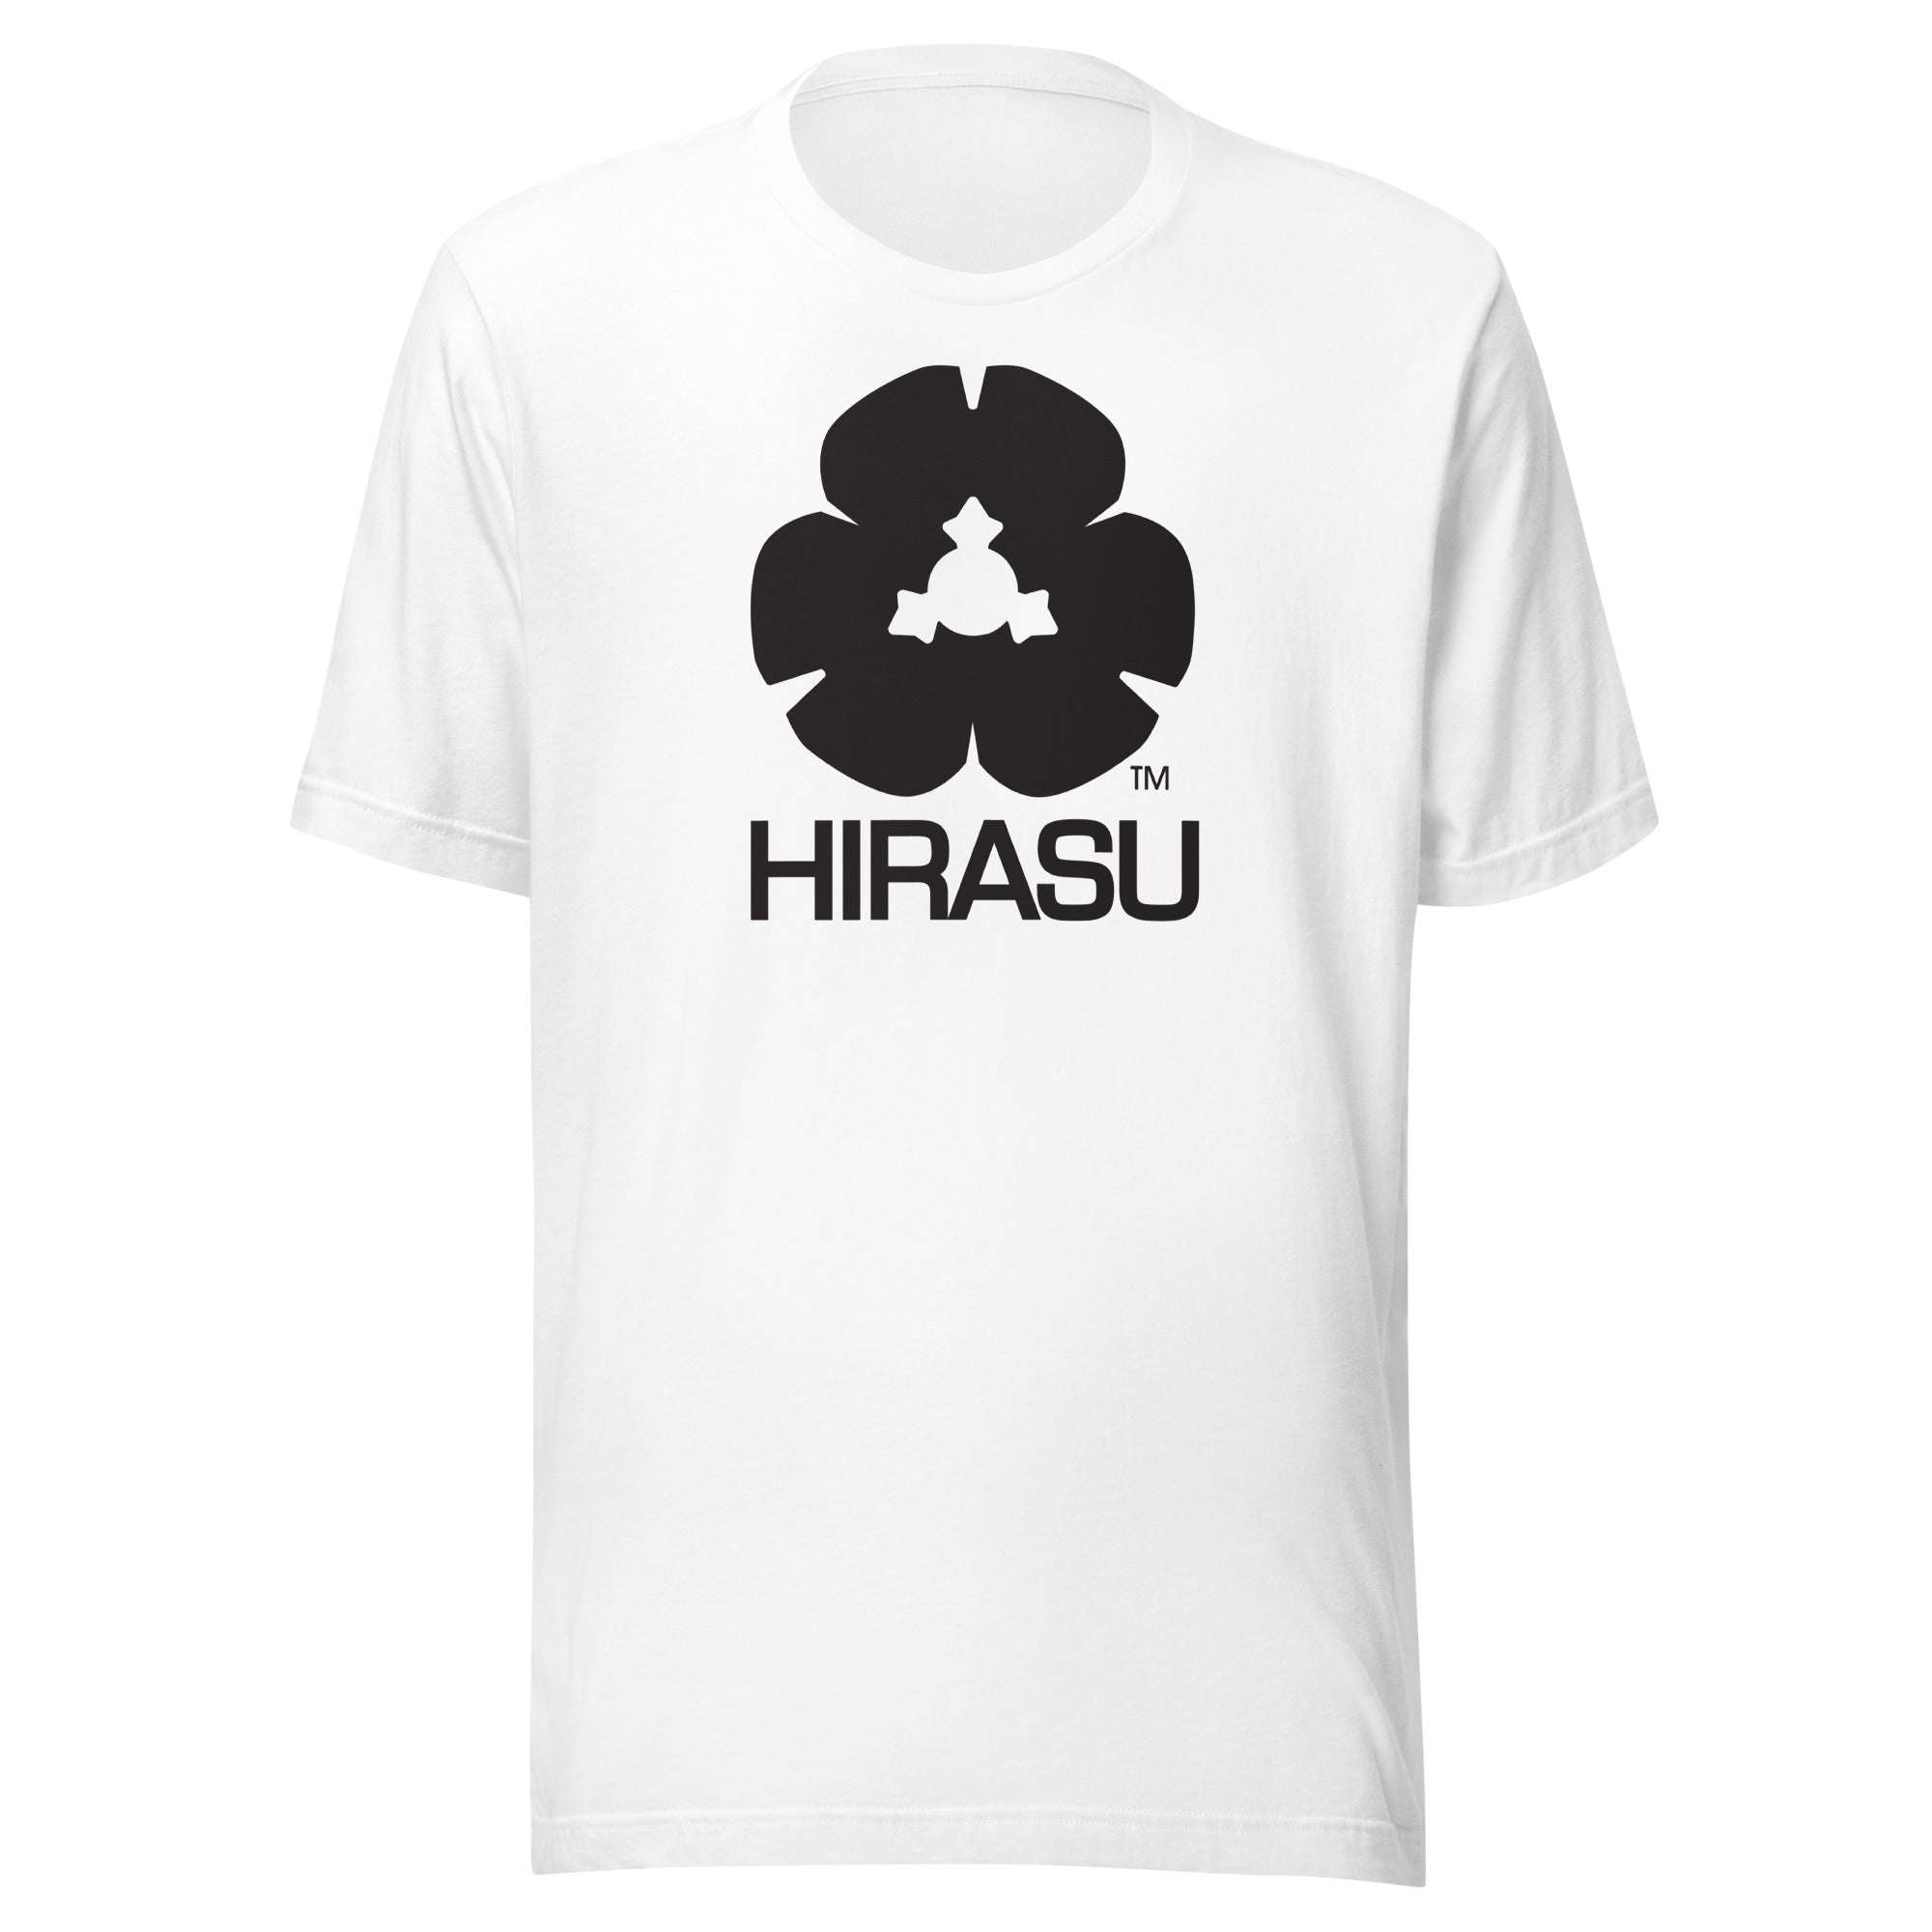 HIRASU | T-shirt | Bella + Canvas